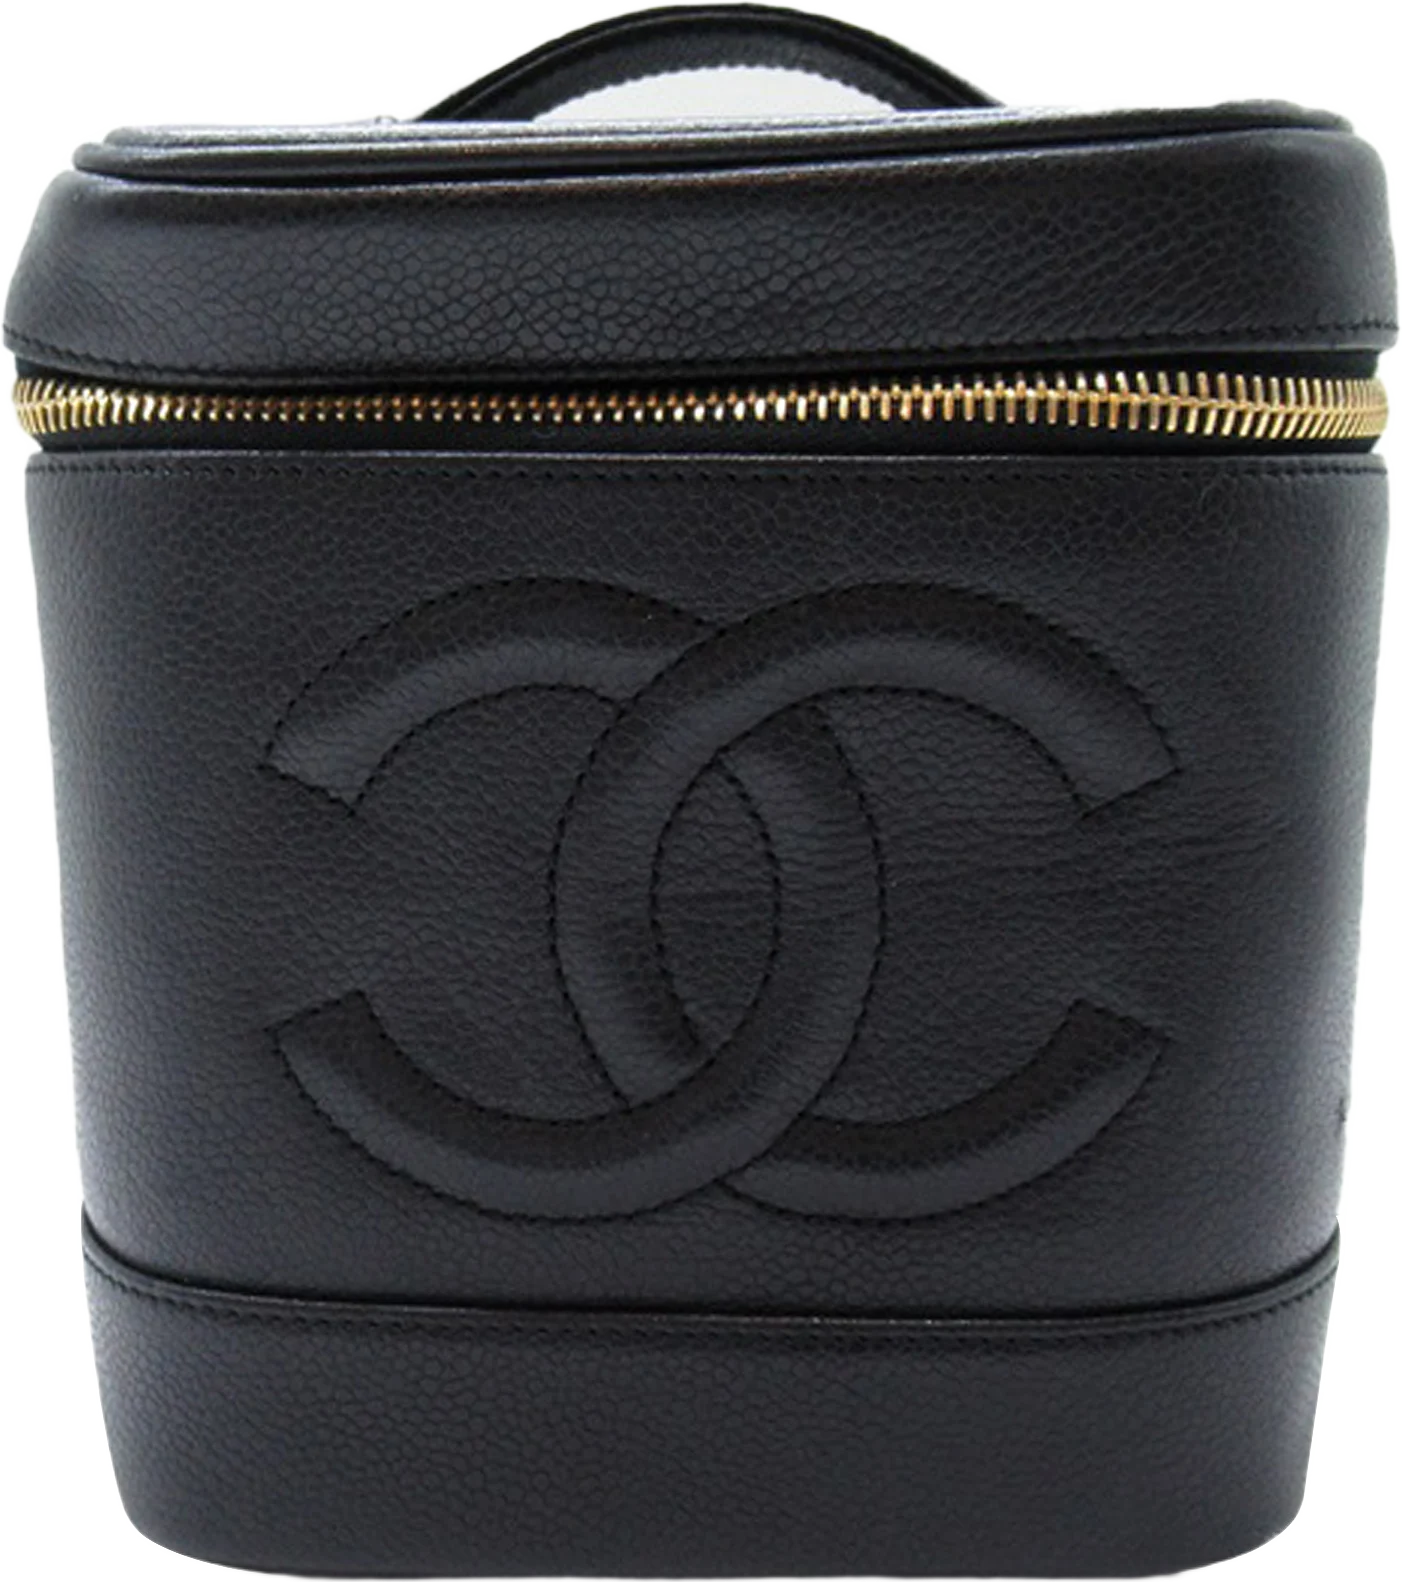 Chanel Cc Caviar Vanity Case